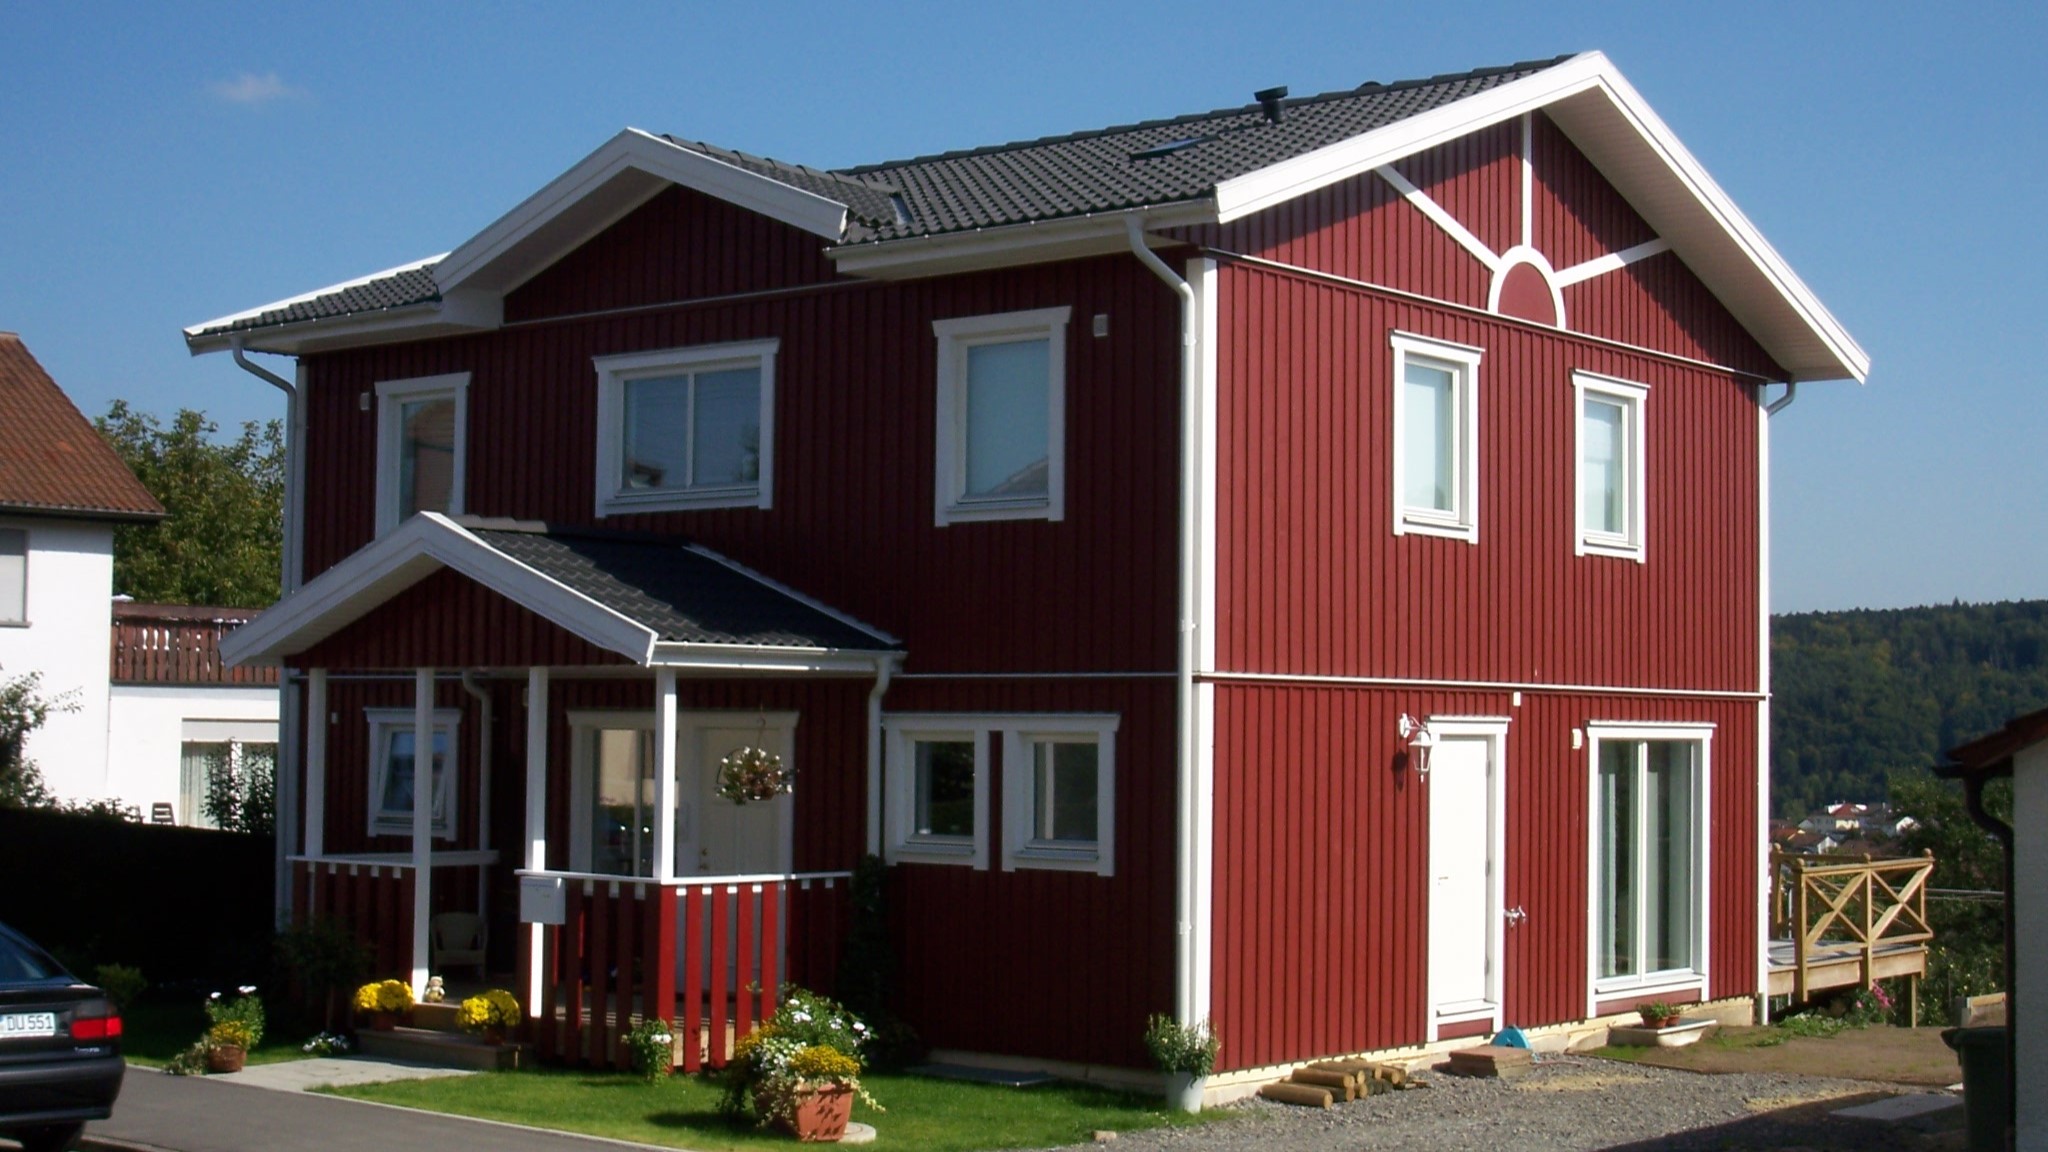 Modernes rot-weißes Schwedenhaus in Holzbauweise